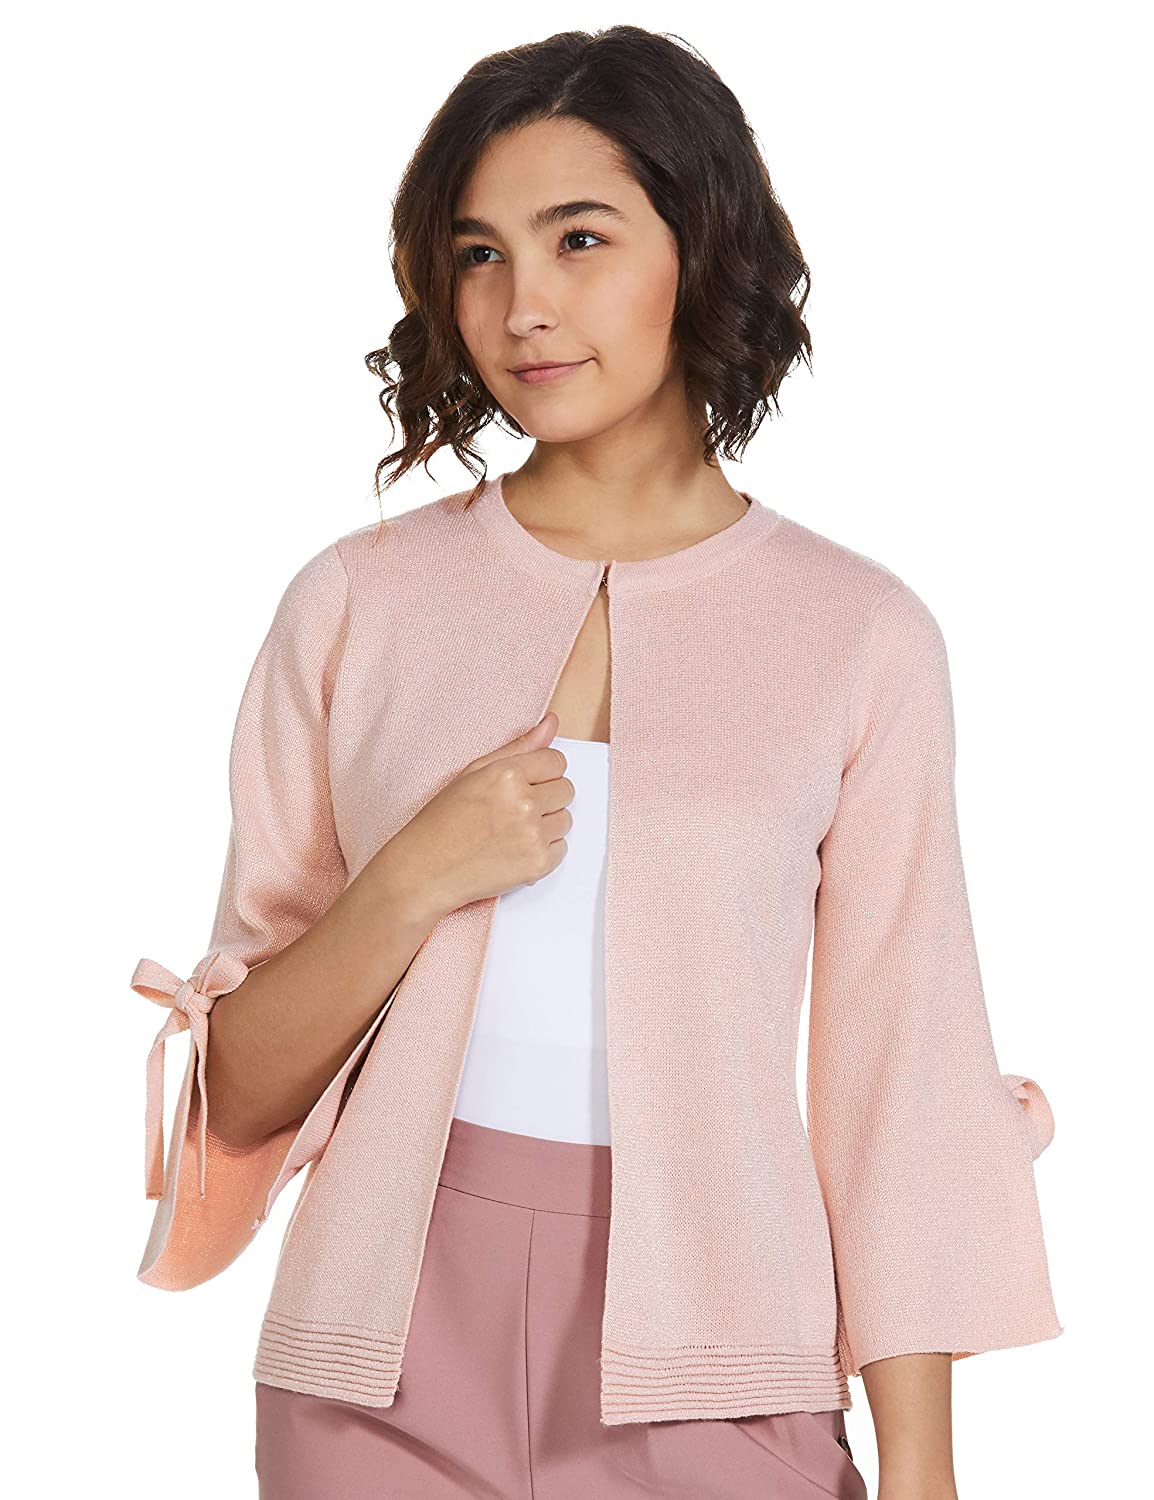 Model wearing a blush pink cardigan